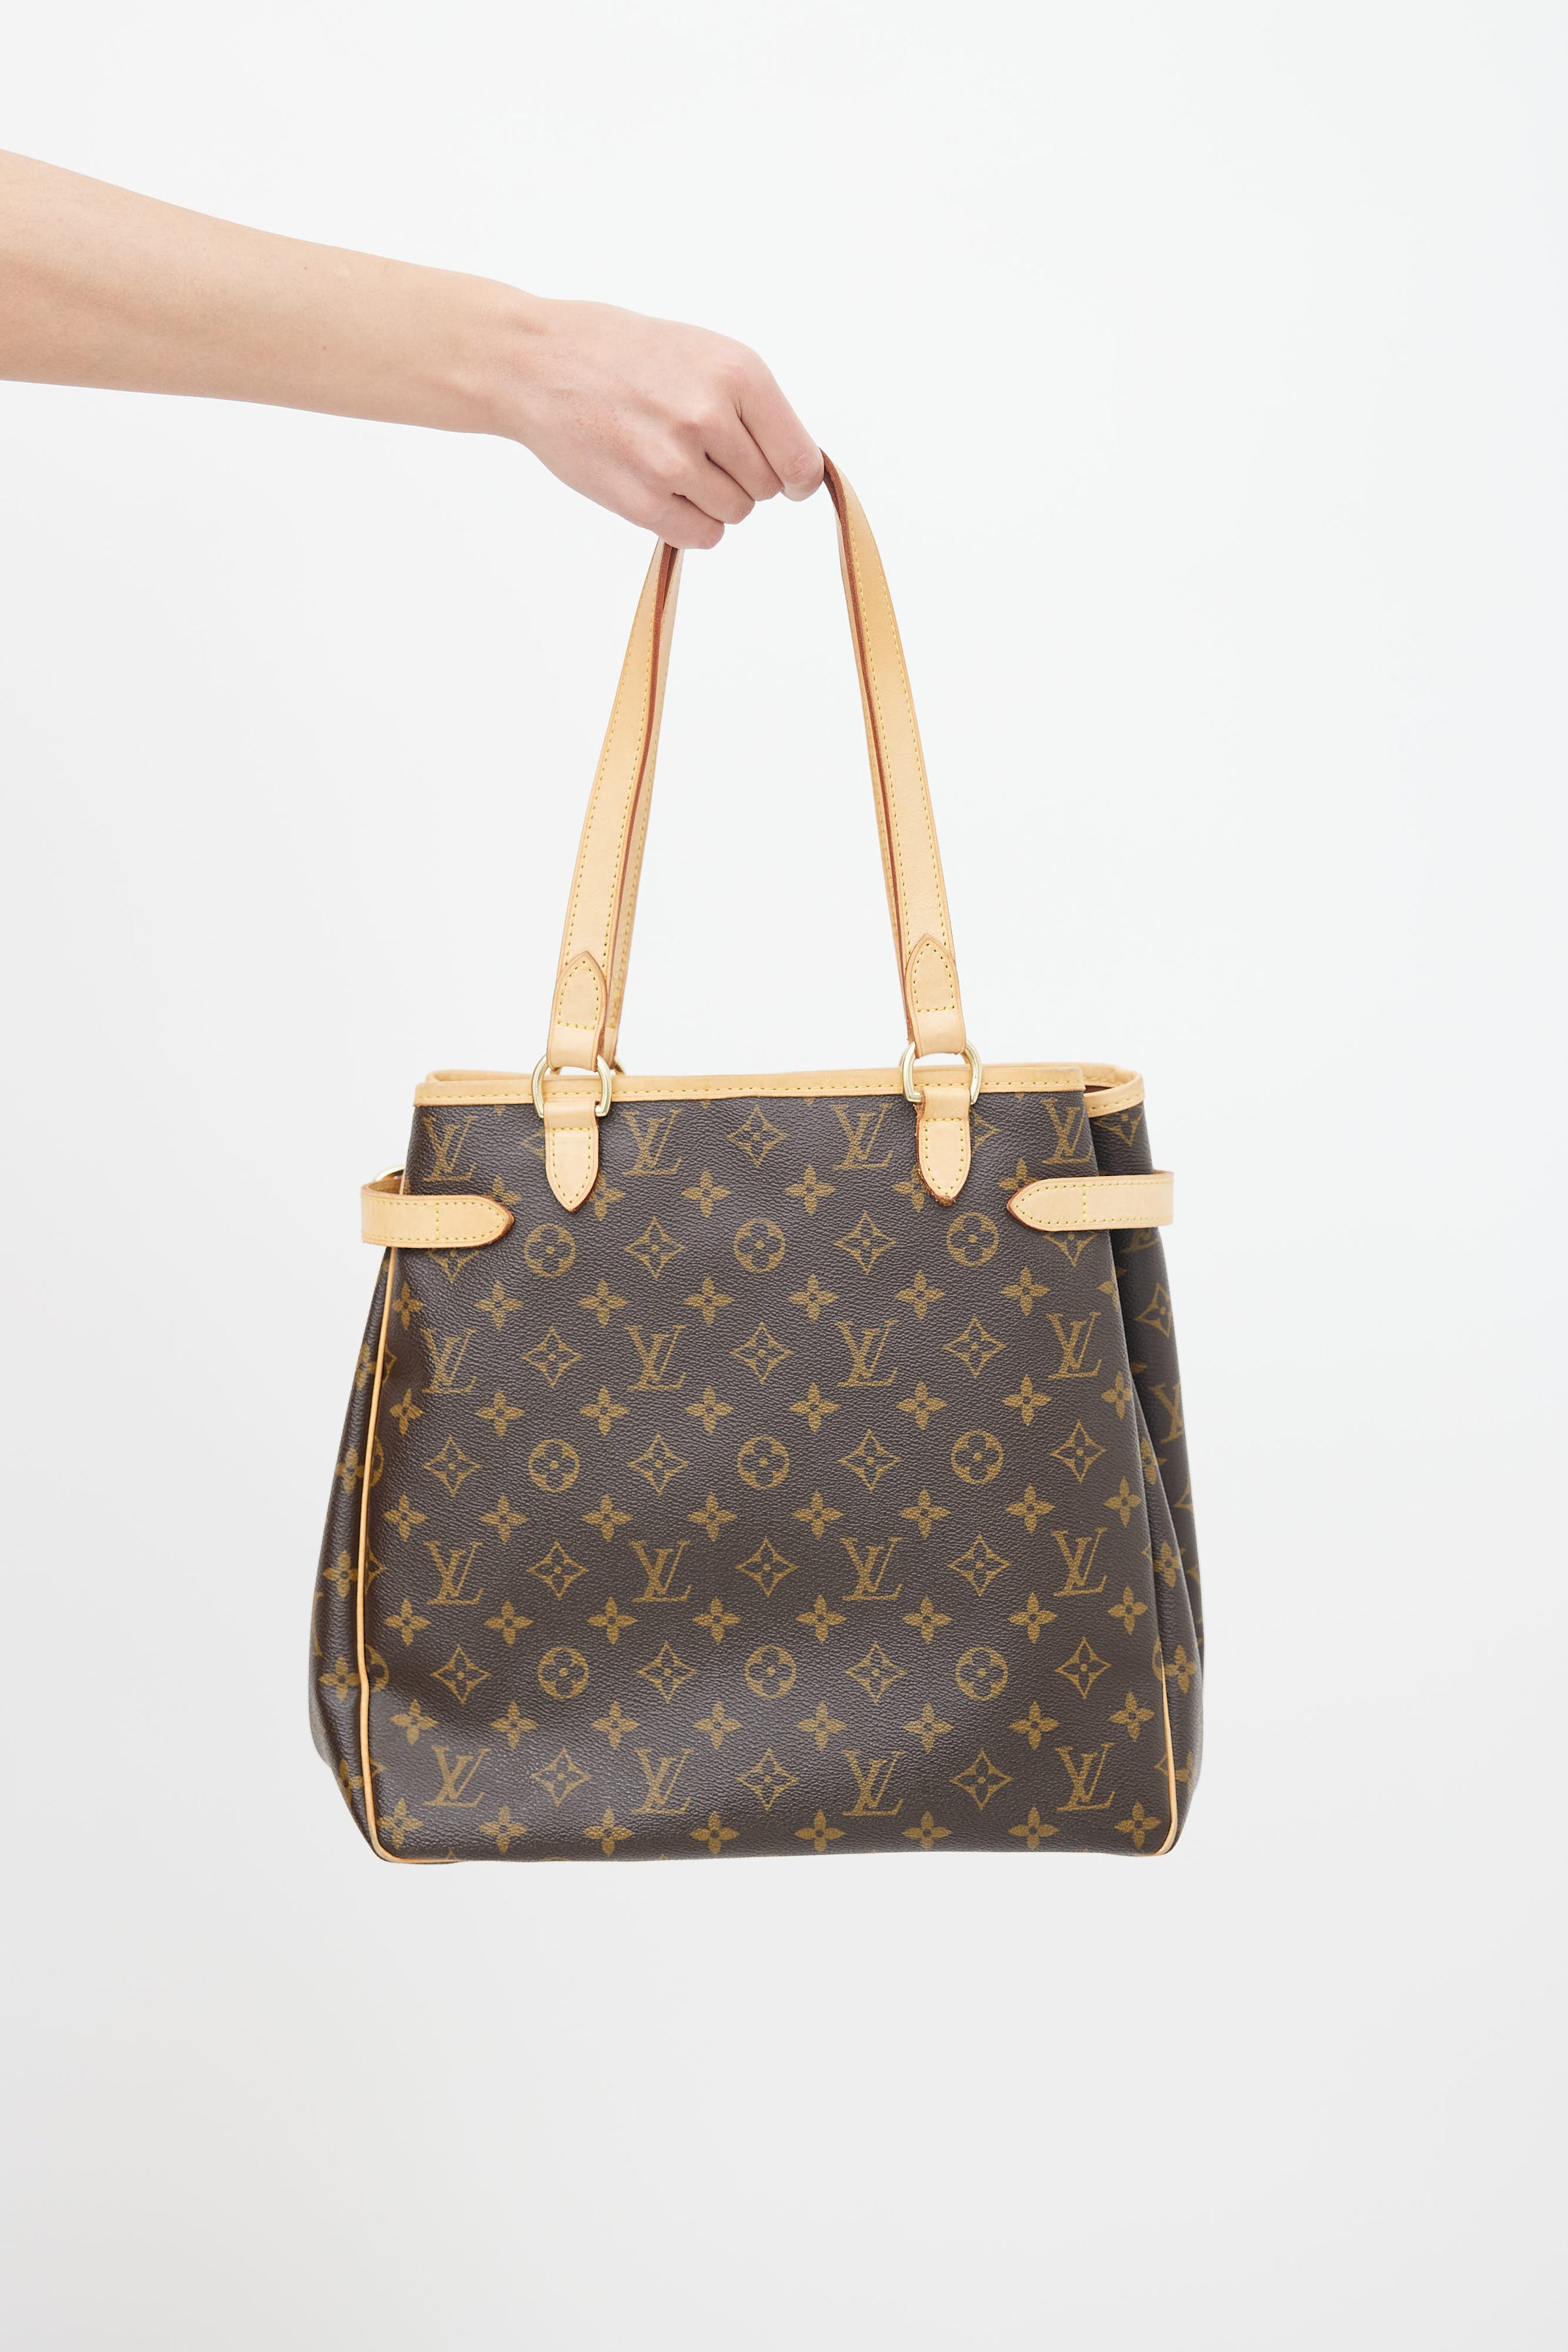 Louis Vuitton, Bags, On Sale Louis Vuitton 3232 Batignolles Brown  Monogram Canvas Shoulder Bag